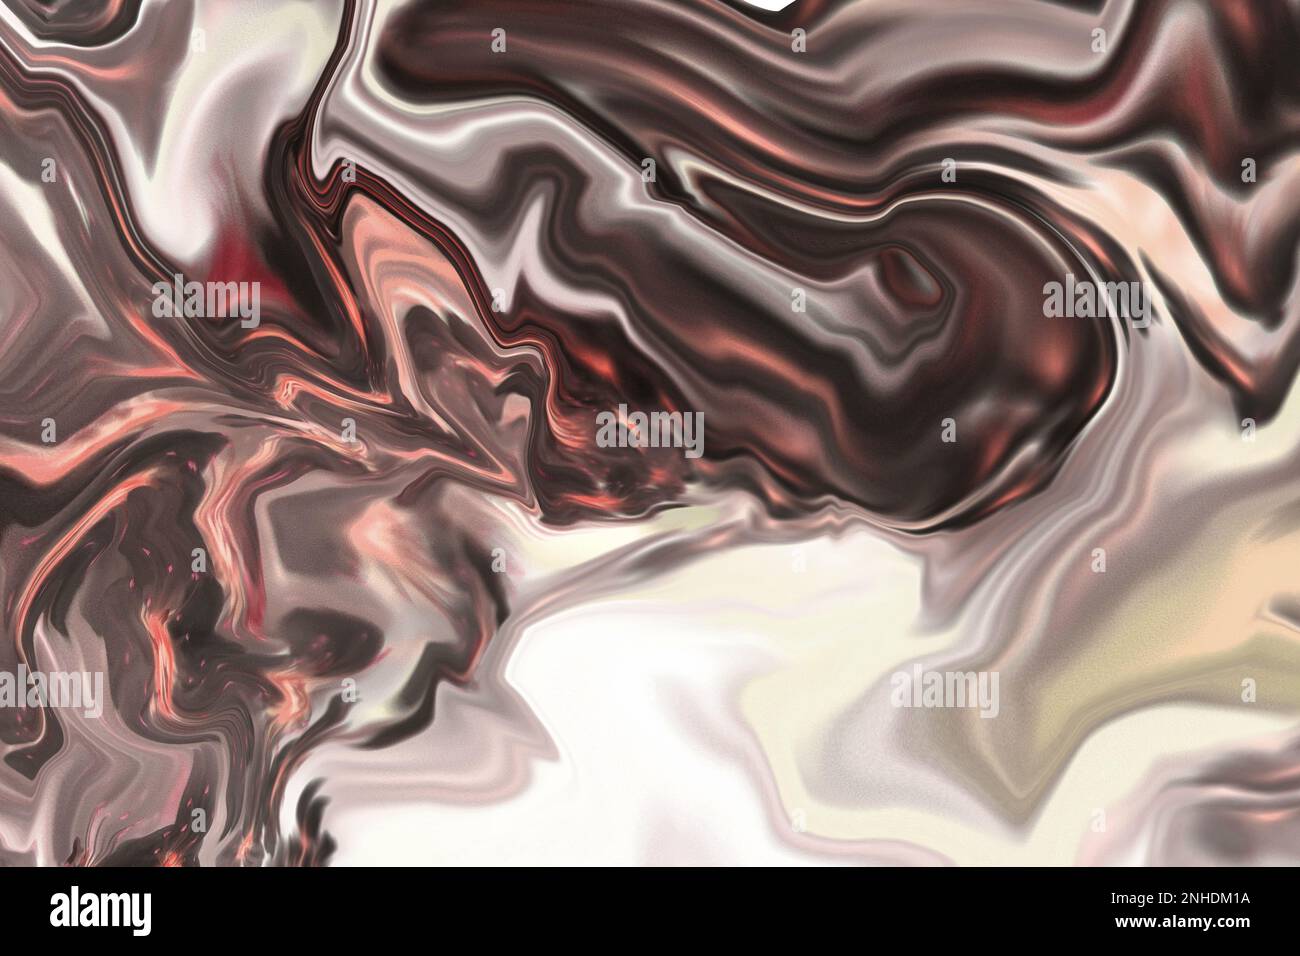 abstracto multicolor ondulado con líneas curvas en tonos marrones como fondo, fondo abstracto Foto de stock